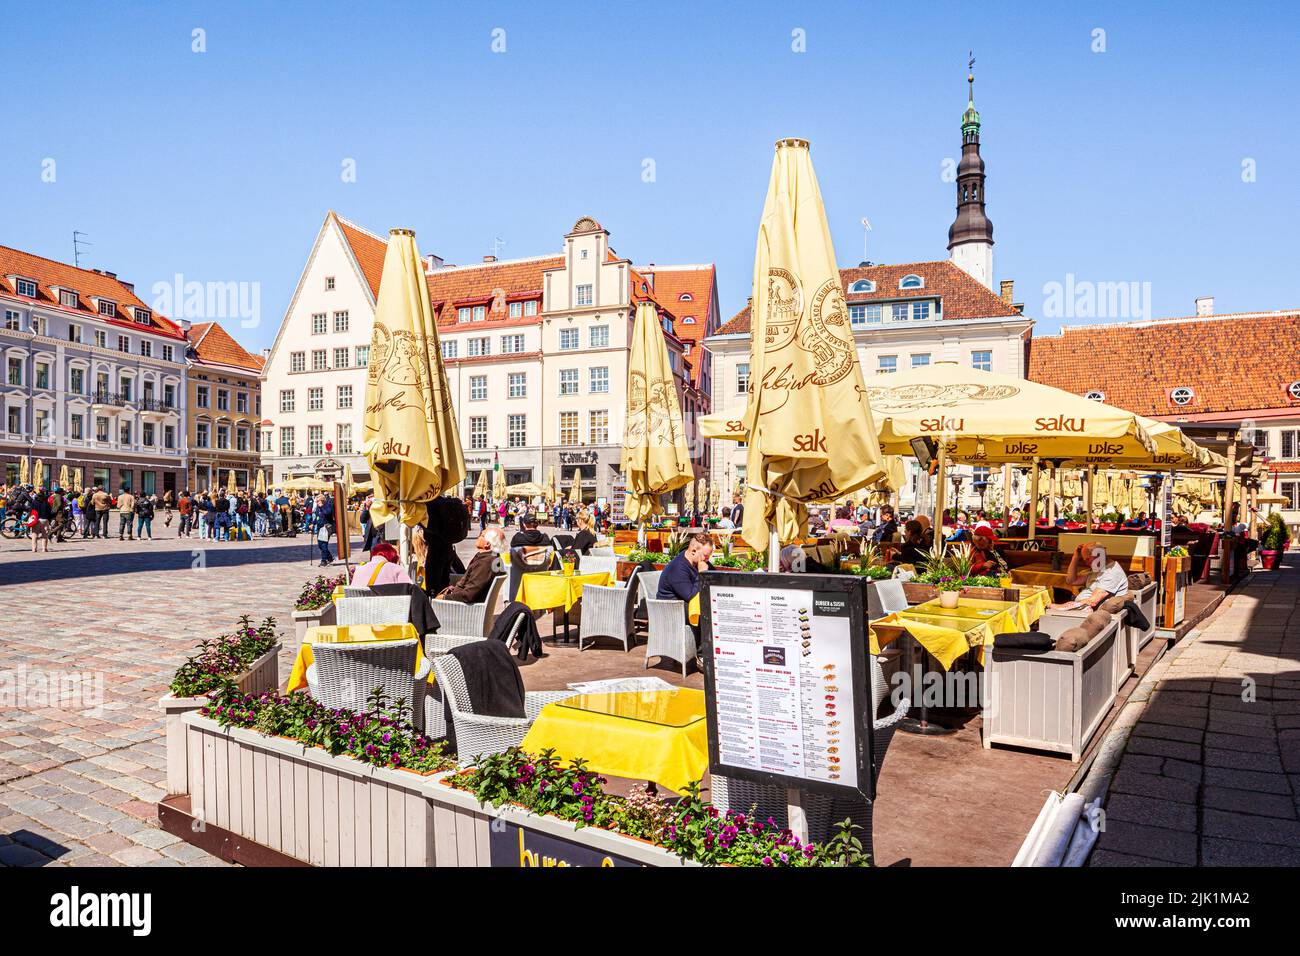 Ein Café auf dem belebten Rathausplatz in der Altstadt von Tallinn, der Hauptstadt Estlands Stockfoto